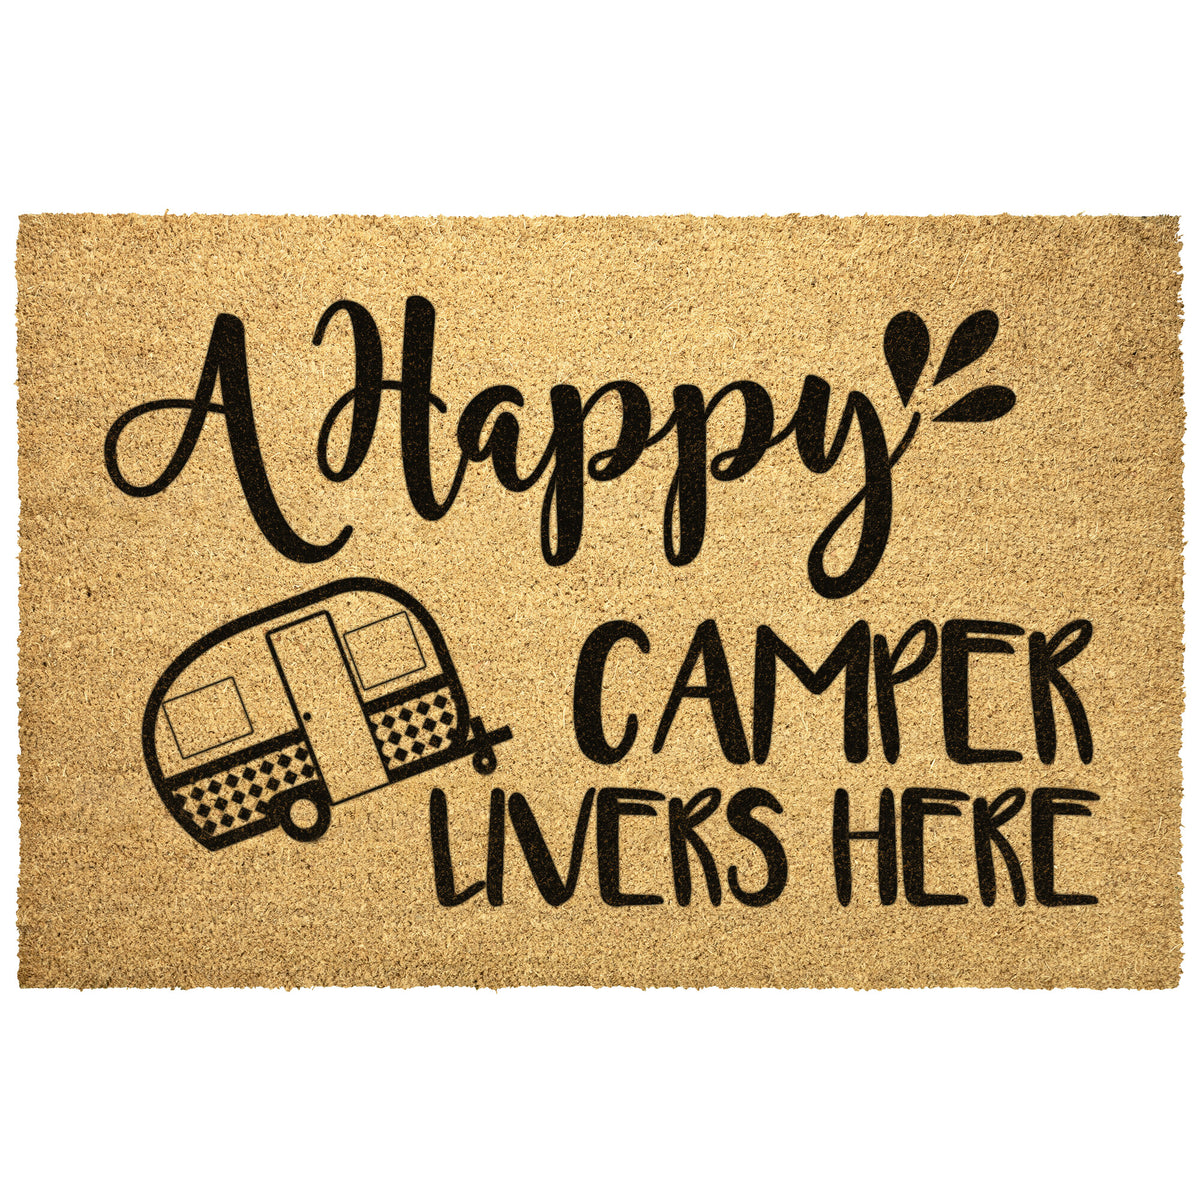 Happy Camper Livers Here Doormat